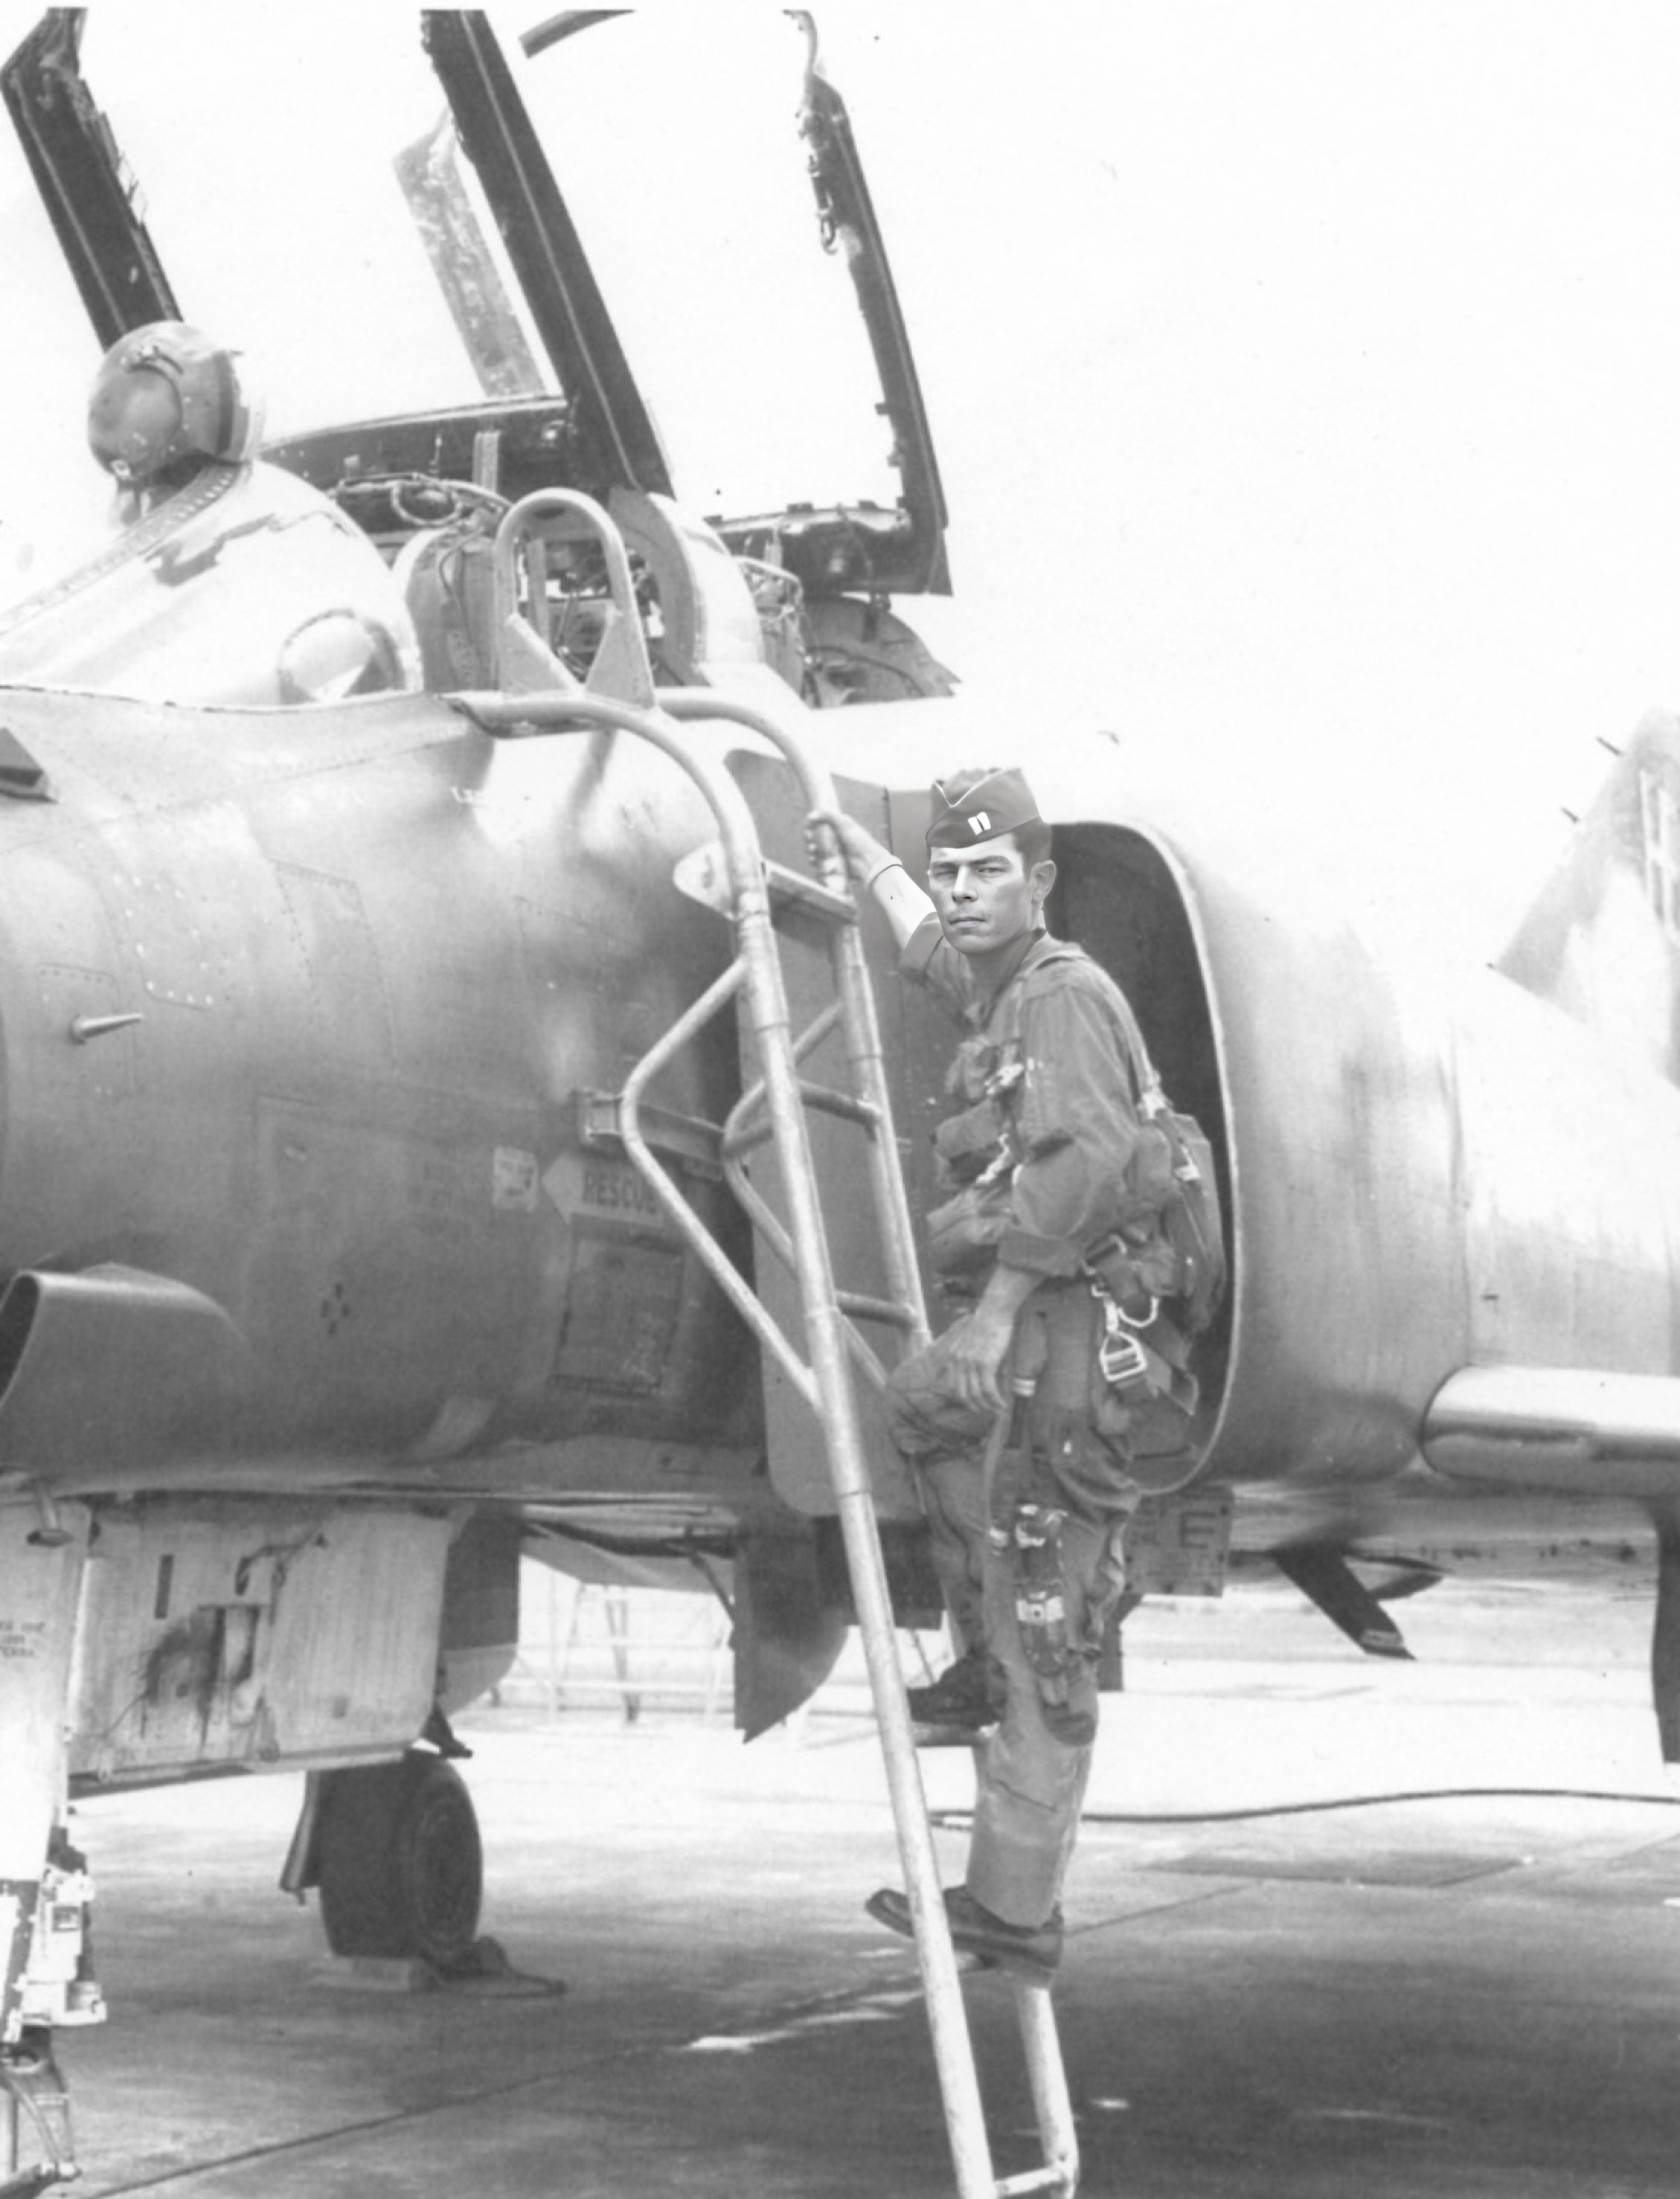 Captain John “Johnny” Harry Romero II, climbing into his Phantom 2. Photo courtesy of John Romero III. Capt. Romero, a decorated pilot, was lost to the Bermuda Triangle in 1971.